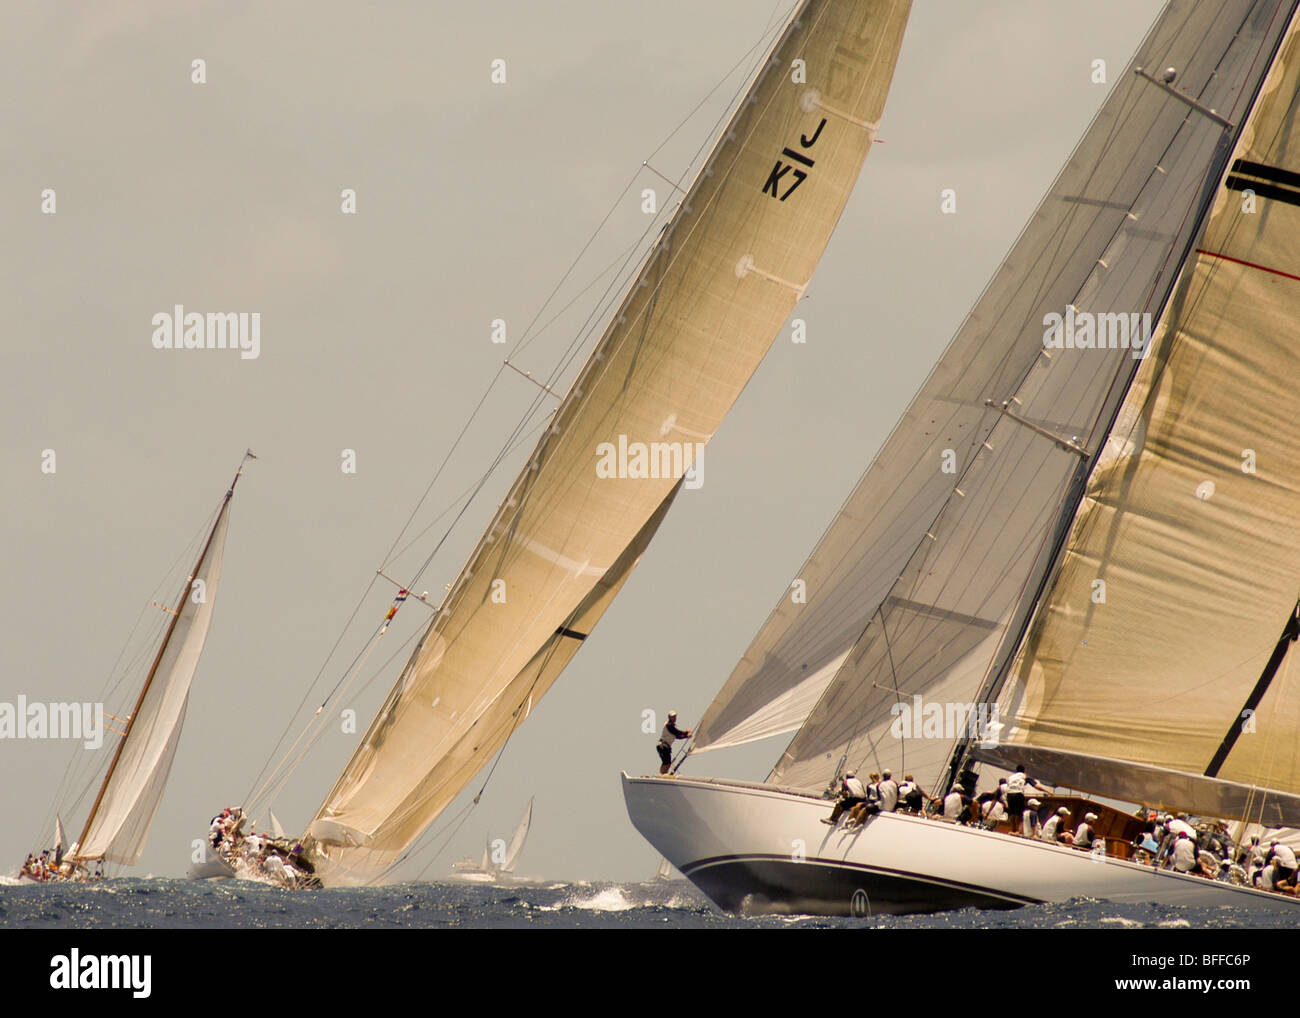 La classe j velsheda et ranger la concurrence dans l'antigua classic yacht regatta Banque D'Images